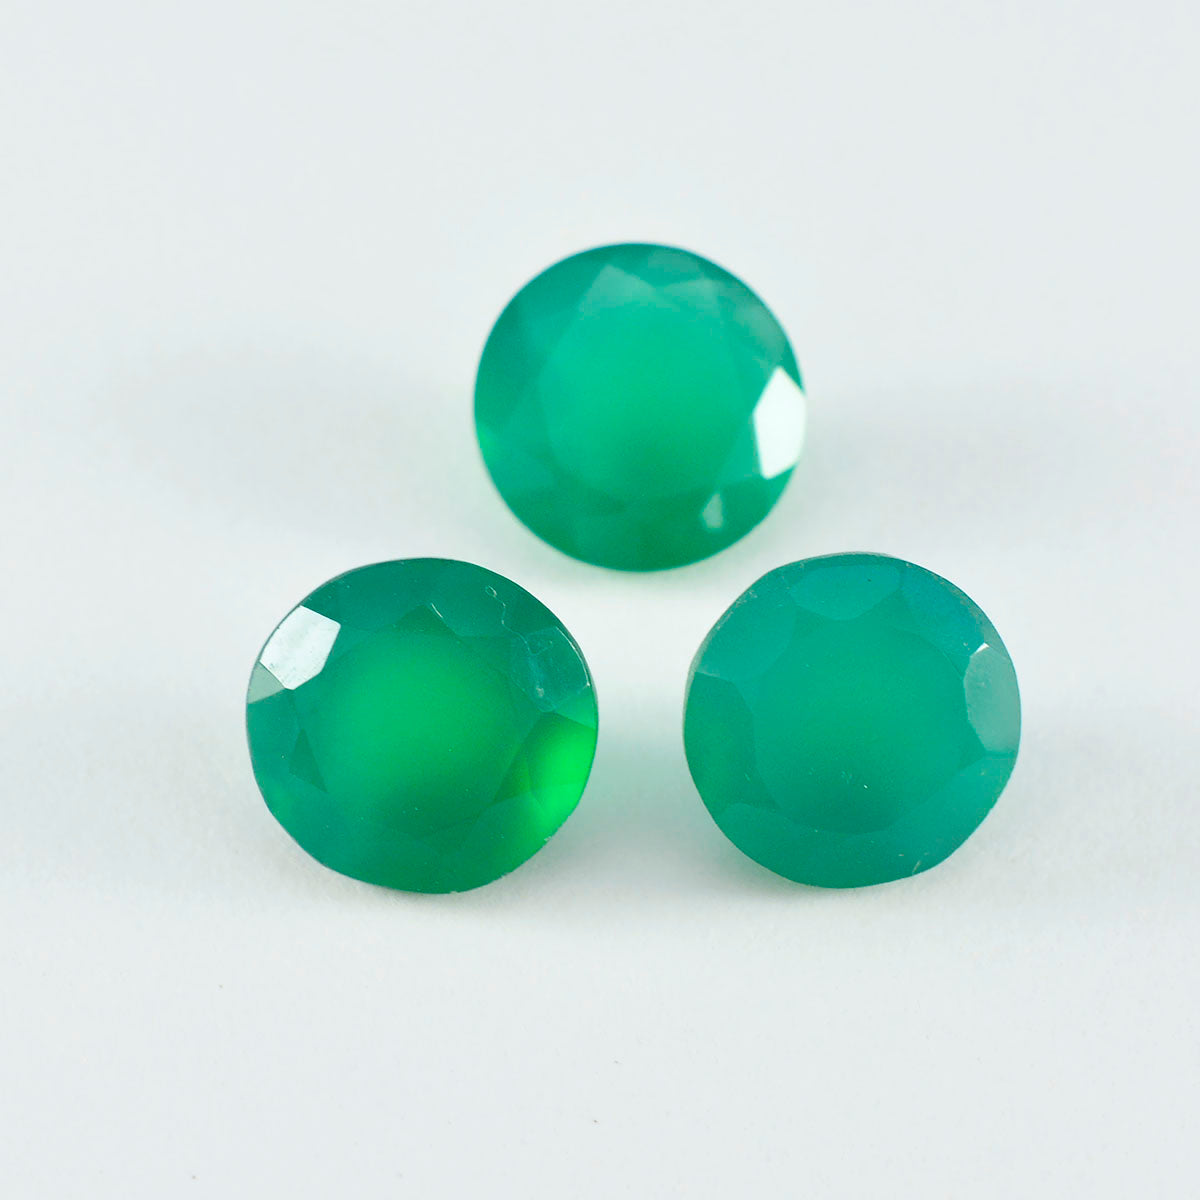 Riyogems 1 Stück natürlicher grüner Onyx, facettiert, 11 x 11 mm, runde Form, hübscher, hochwertiger loser Stein